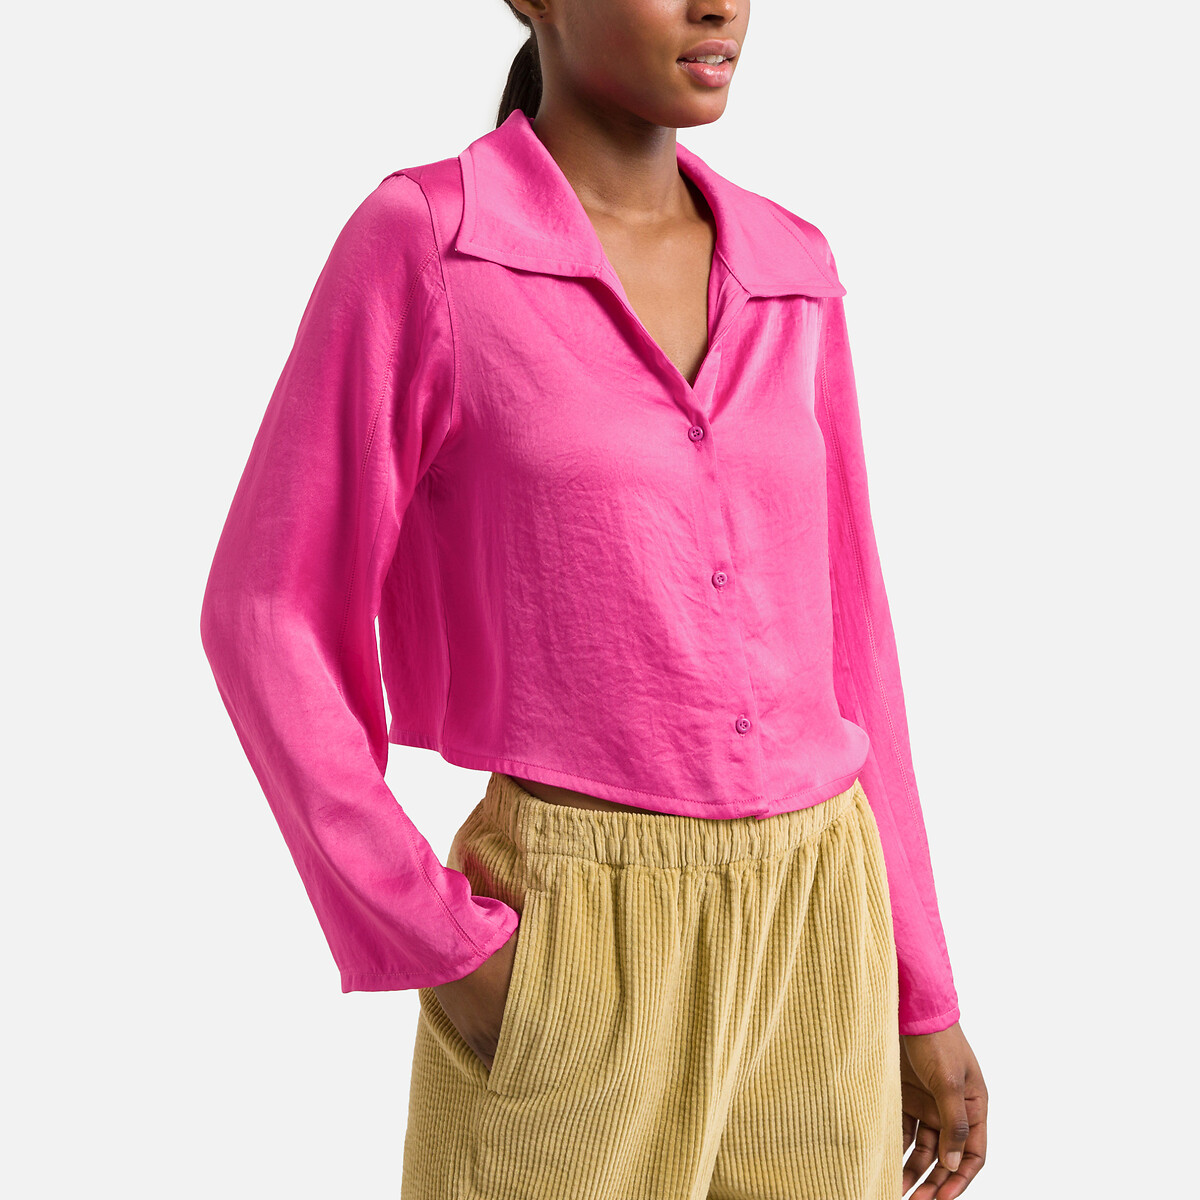 Рубашка Укороченная с длинными рукавами L розовый LaRedoute, размер L - фото 1